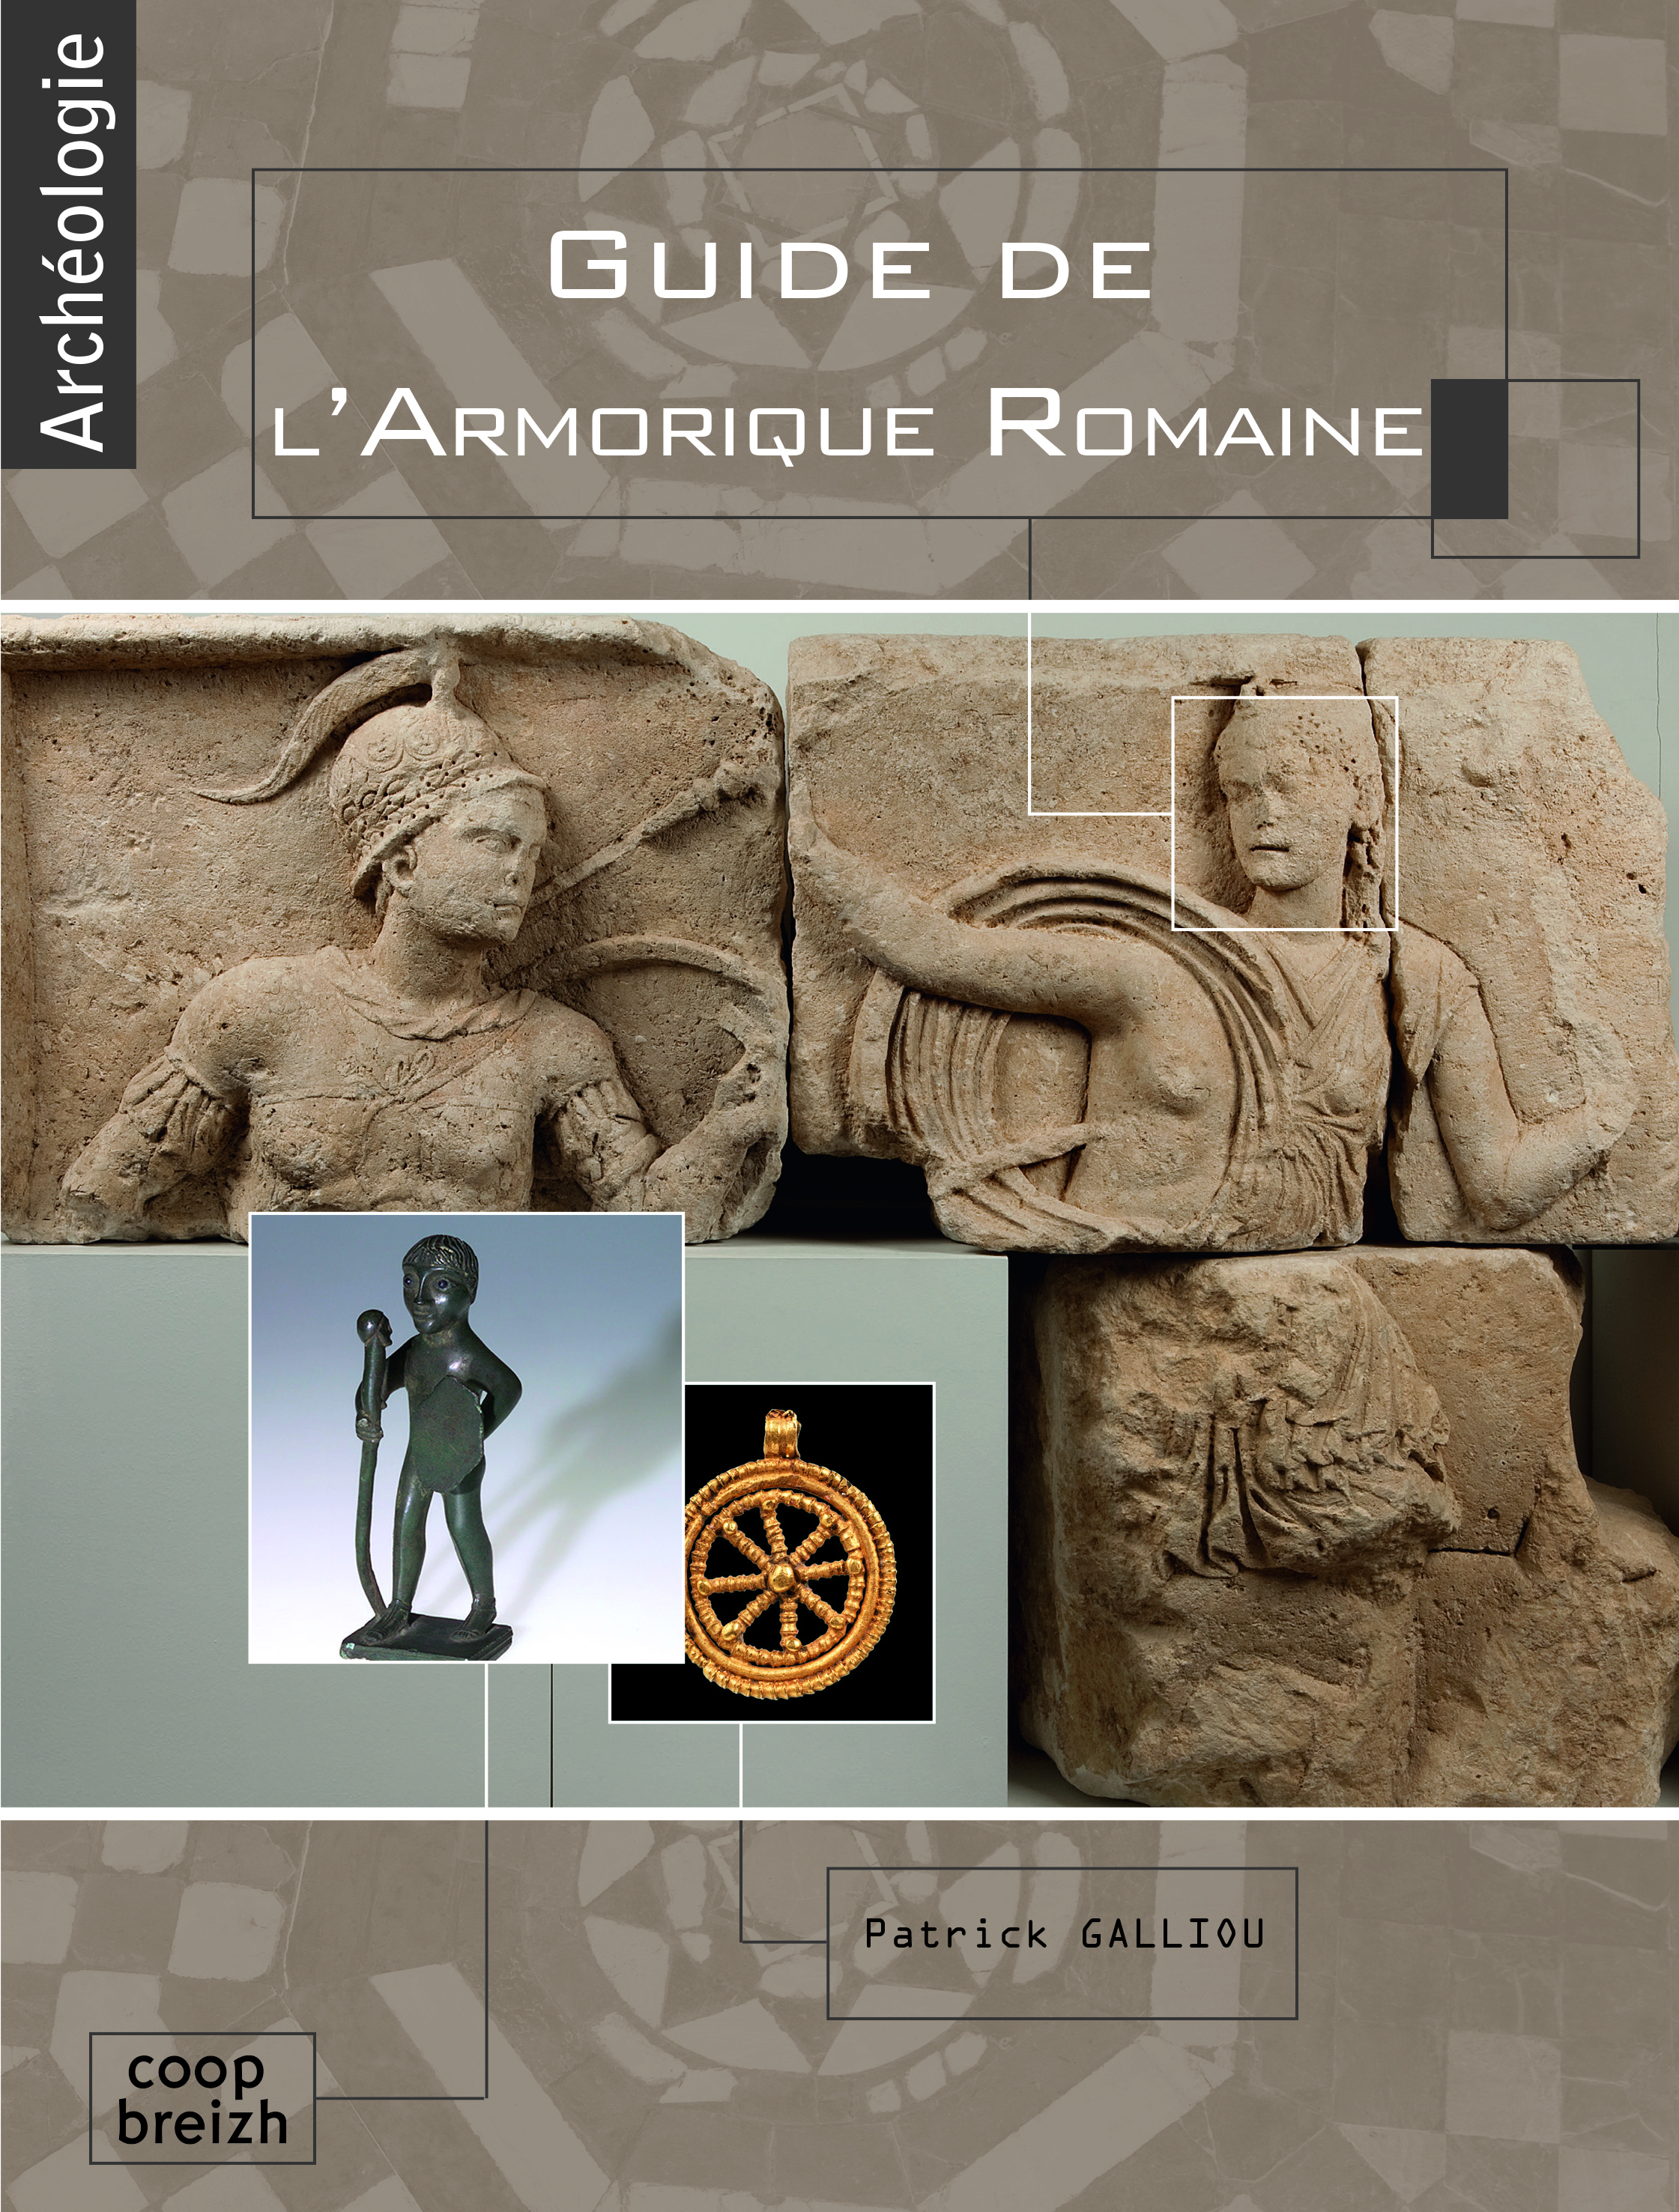 Guide de l'Armorique romaine, 2015, 176 p.